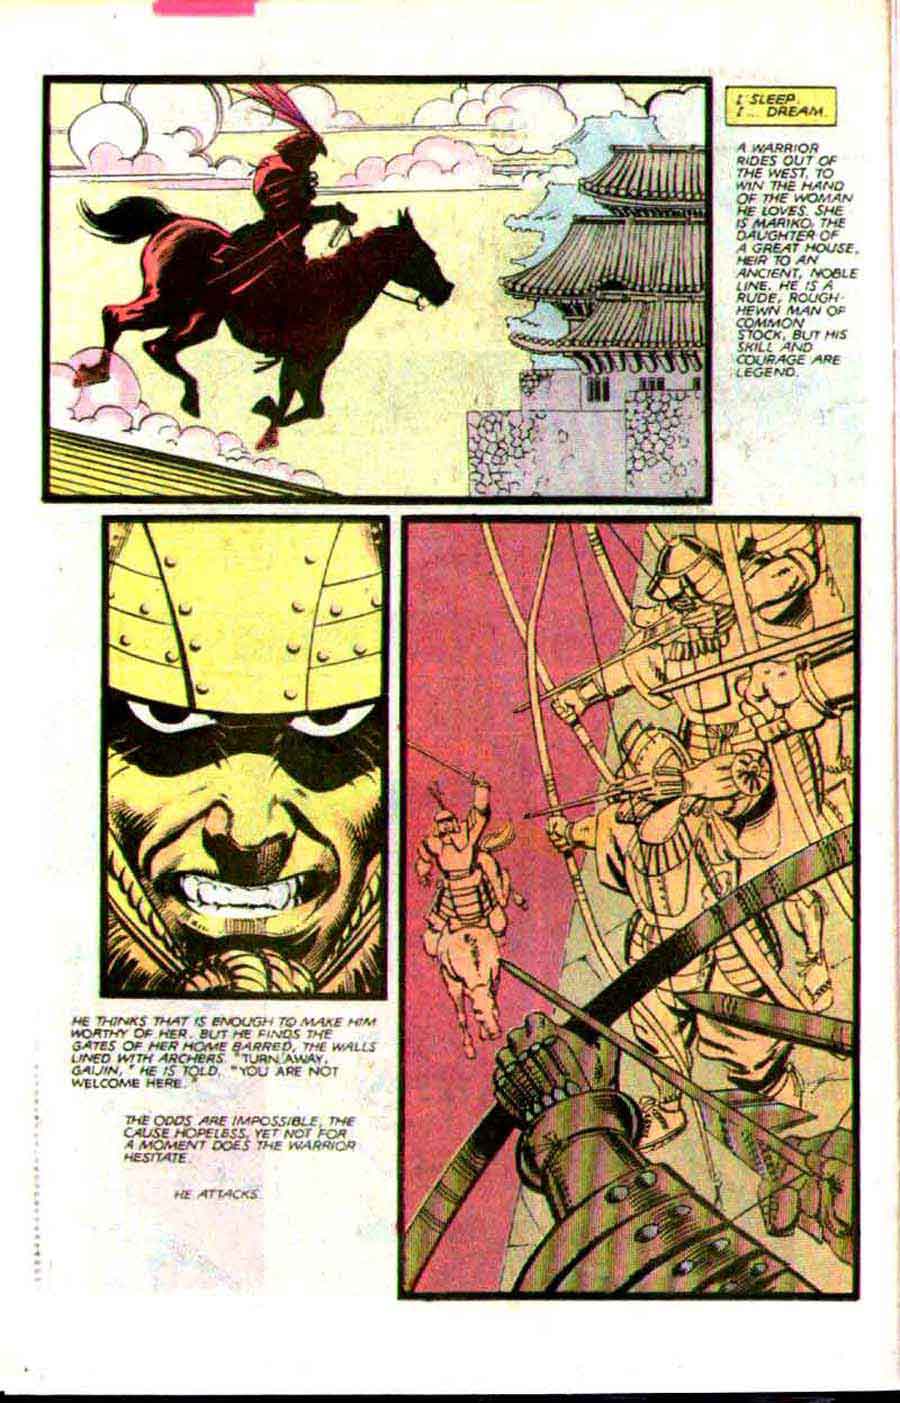 Wolverine v1 #3 1980s marvel comic book page art by Frank Miller